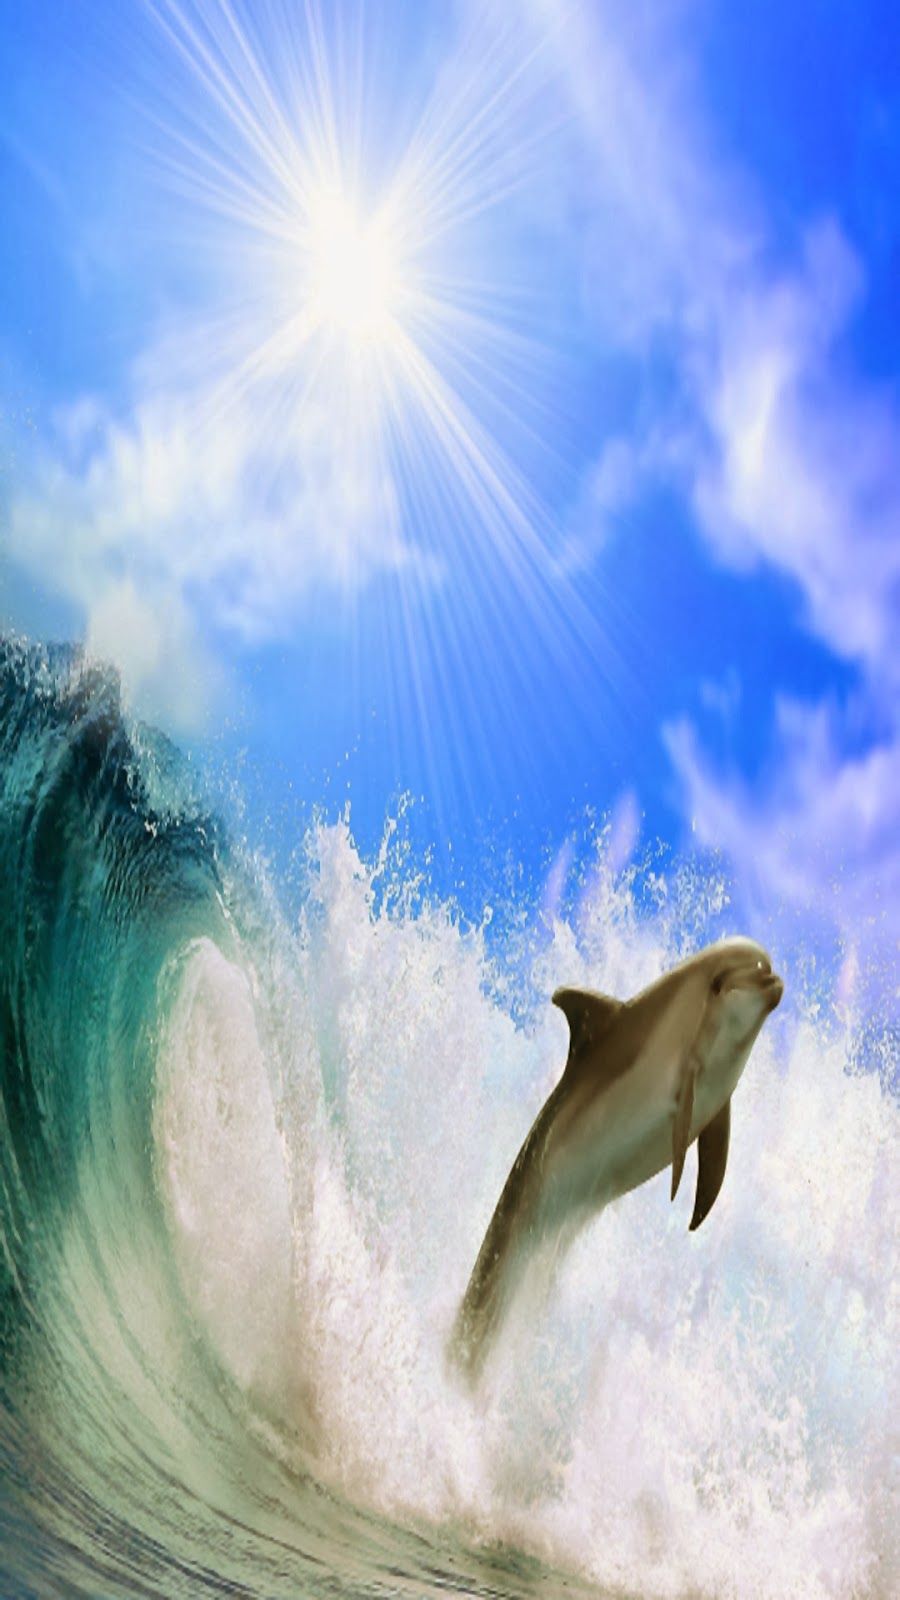 carta da parati samsung s4,delfino,delfino tursiope,delfino di tursiope comune,mammifero marino,cielo